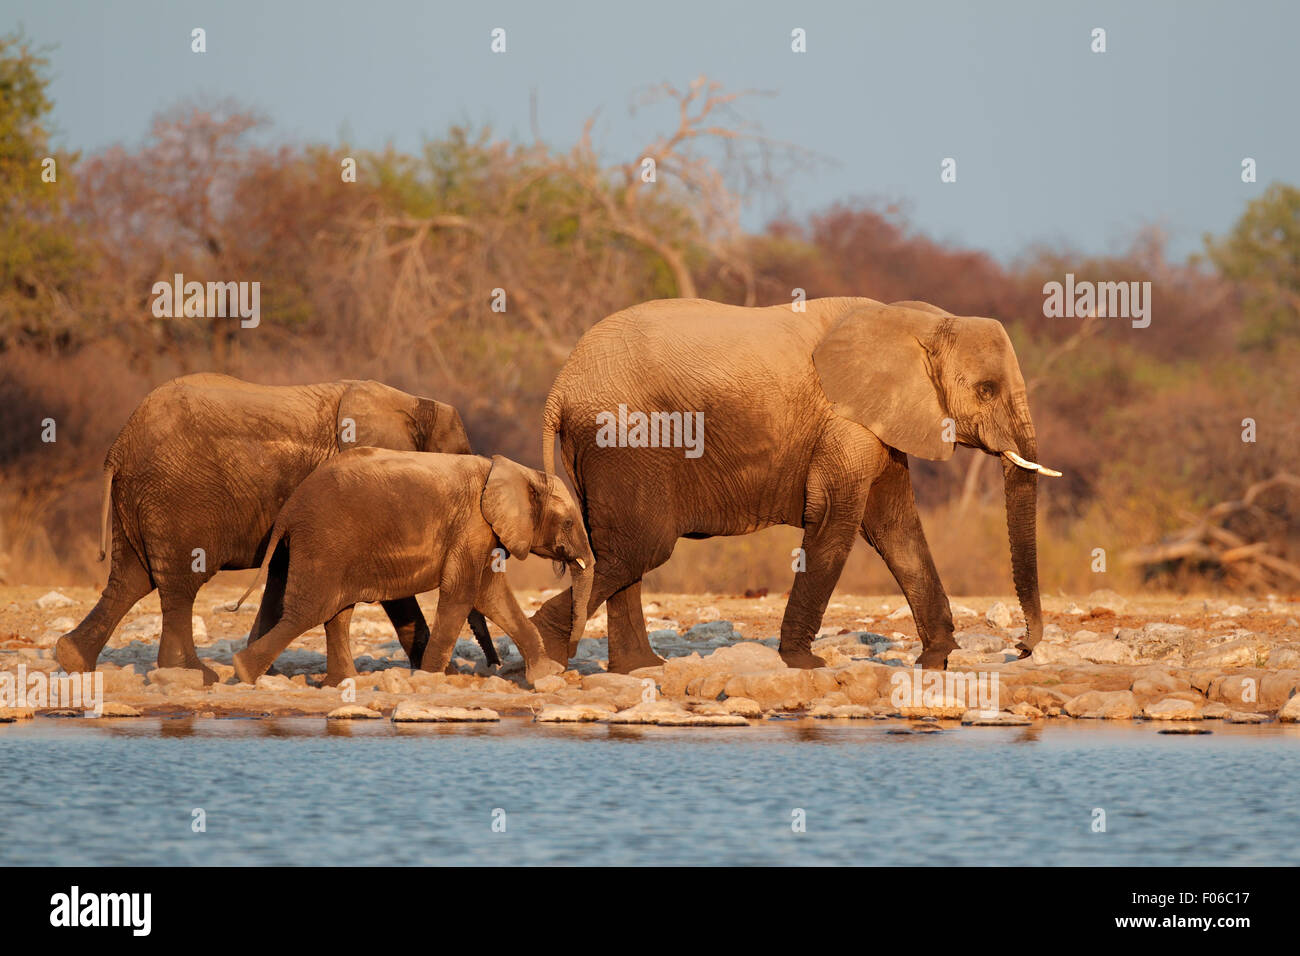 Les éléphants d'Afrique (Loxodonta africana) recouvert de poussière, Etosha National Park, Namibie Banque D'Images